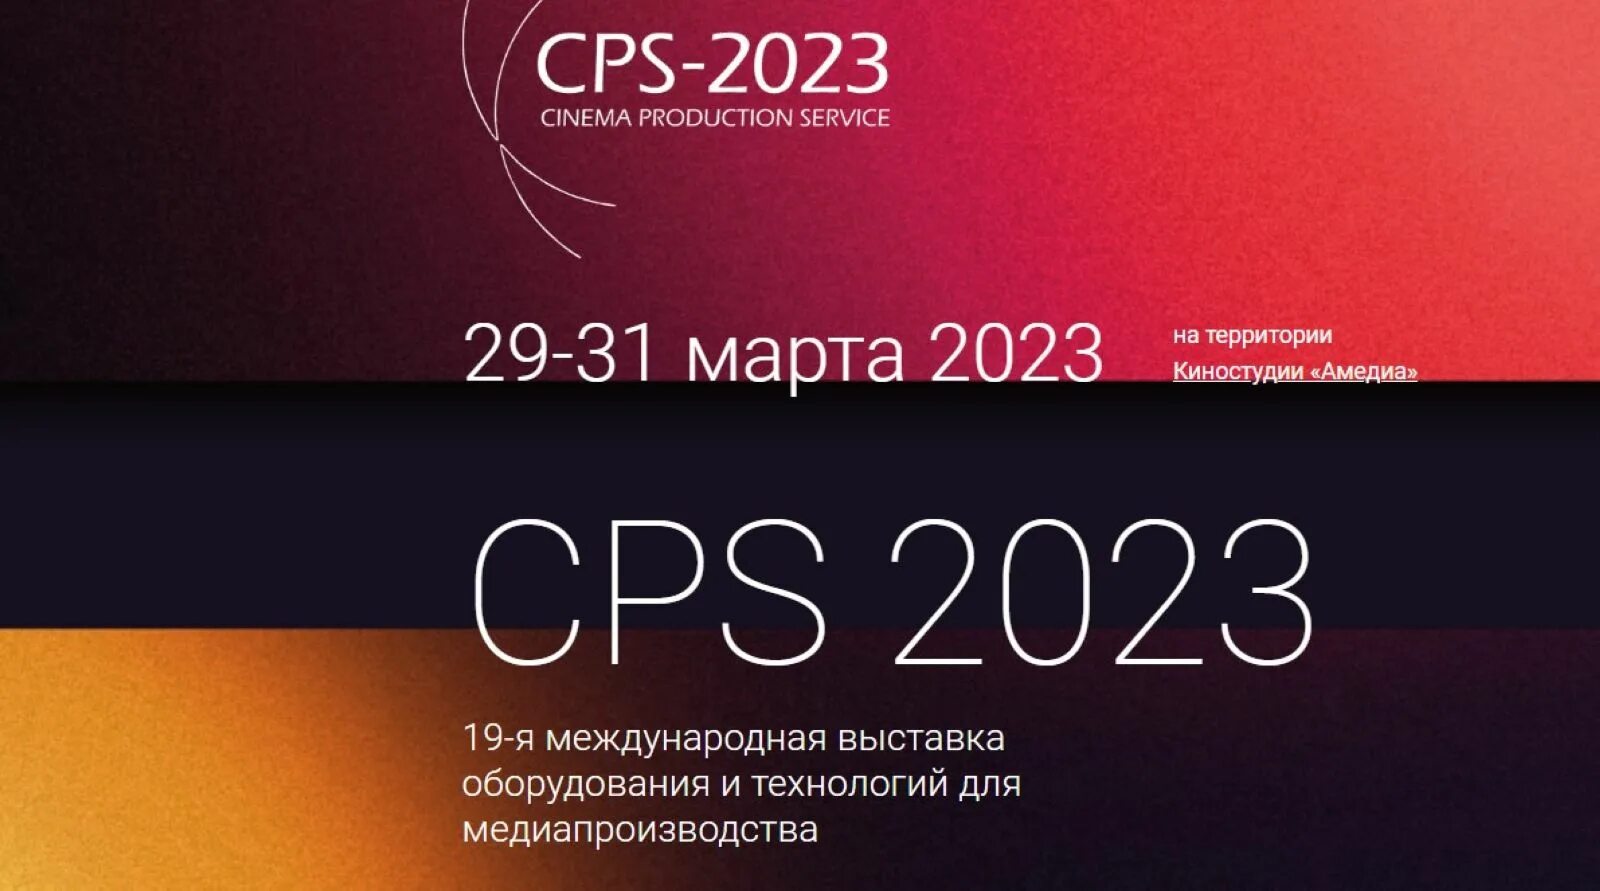 Темы для технологии медиапроизводства. CPS 2023. Москва выставка event фото Монгола.